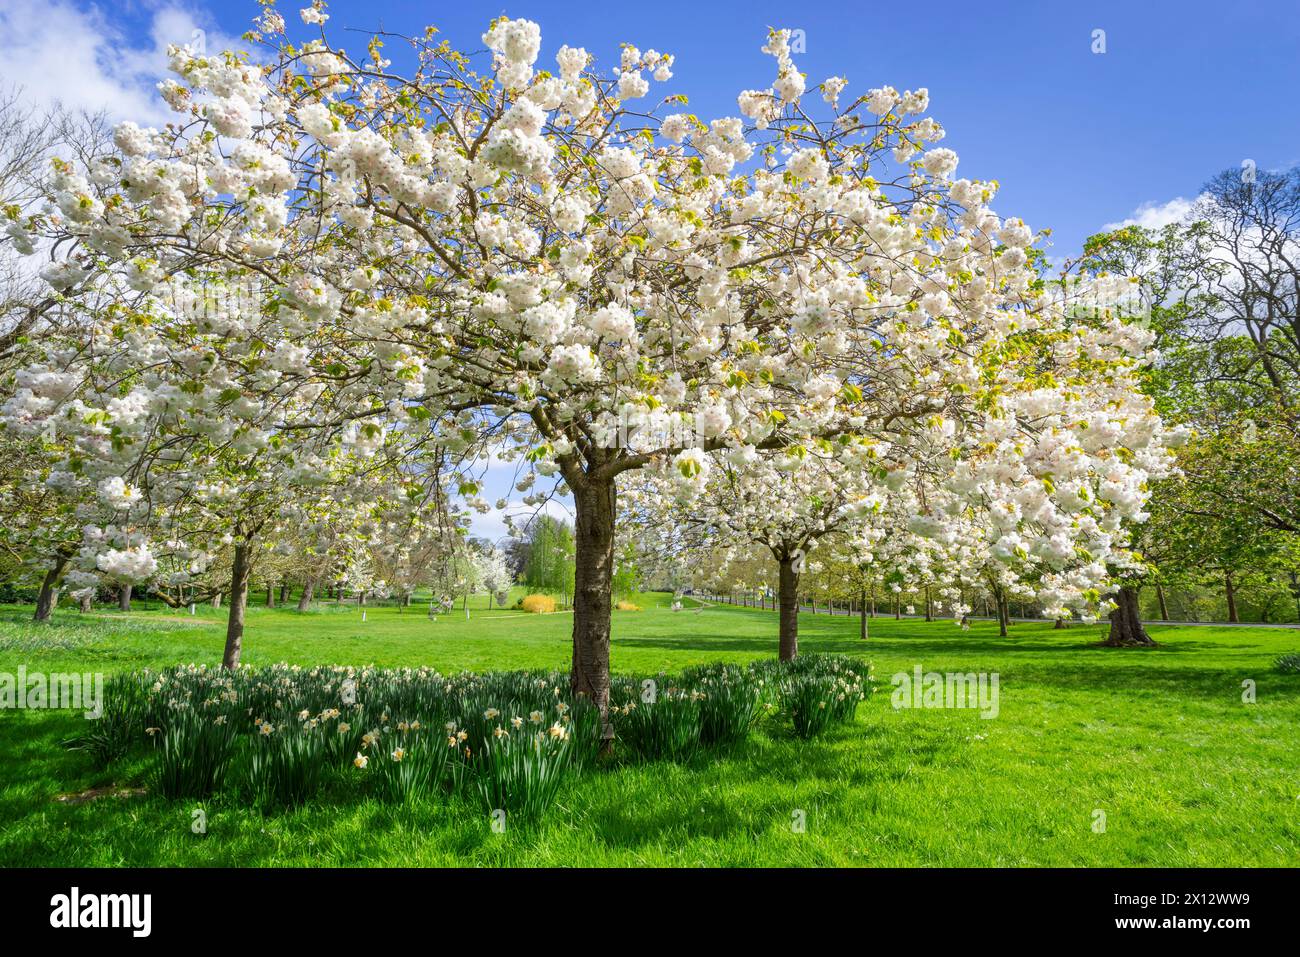 Fleurs de cerisier blanc sur les arbres dans le campus du parc universitaire de Nottingham Nottinghamshire Angleterre GB UK Europe Banque D'Images